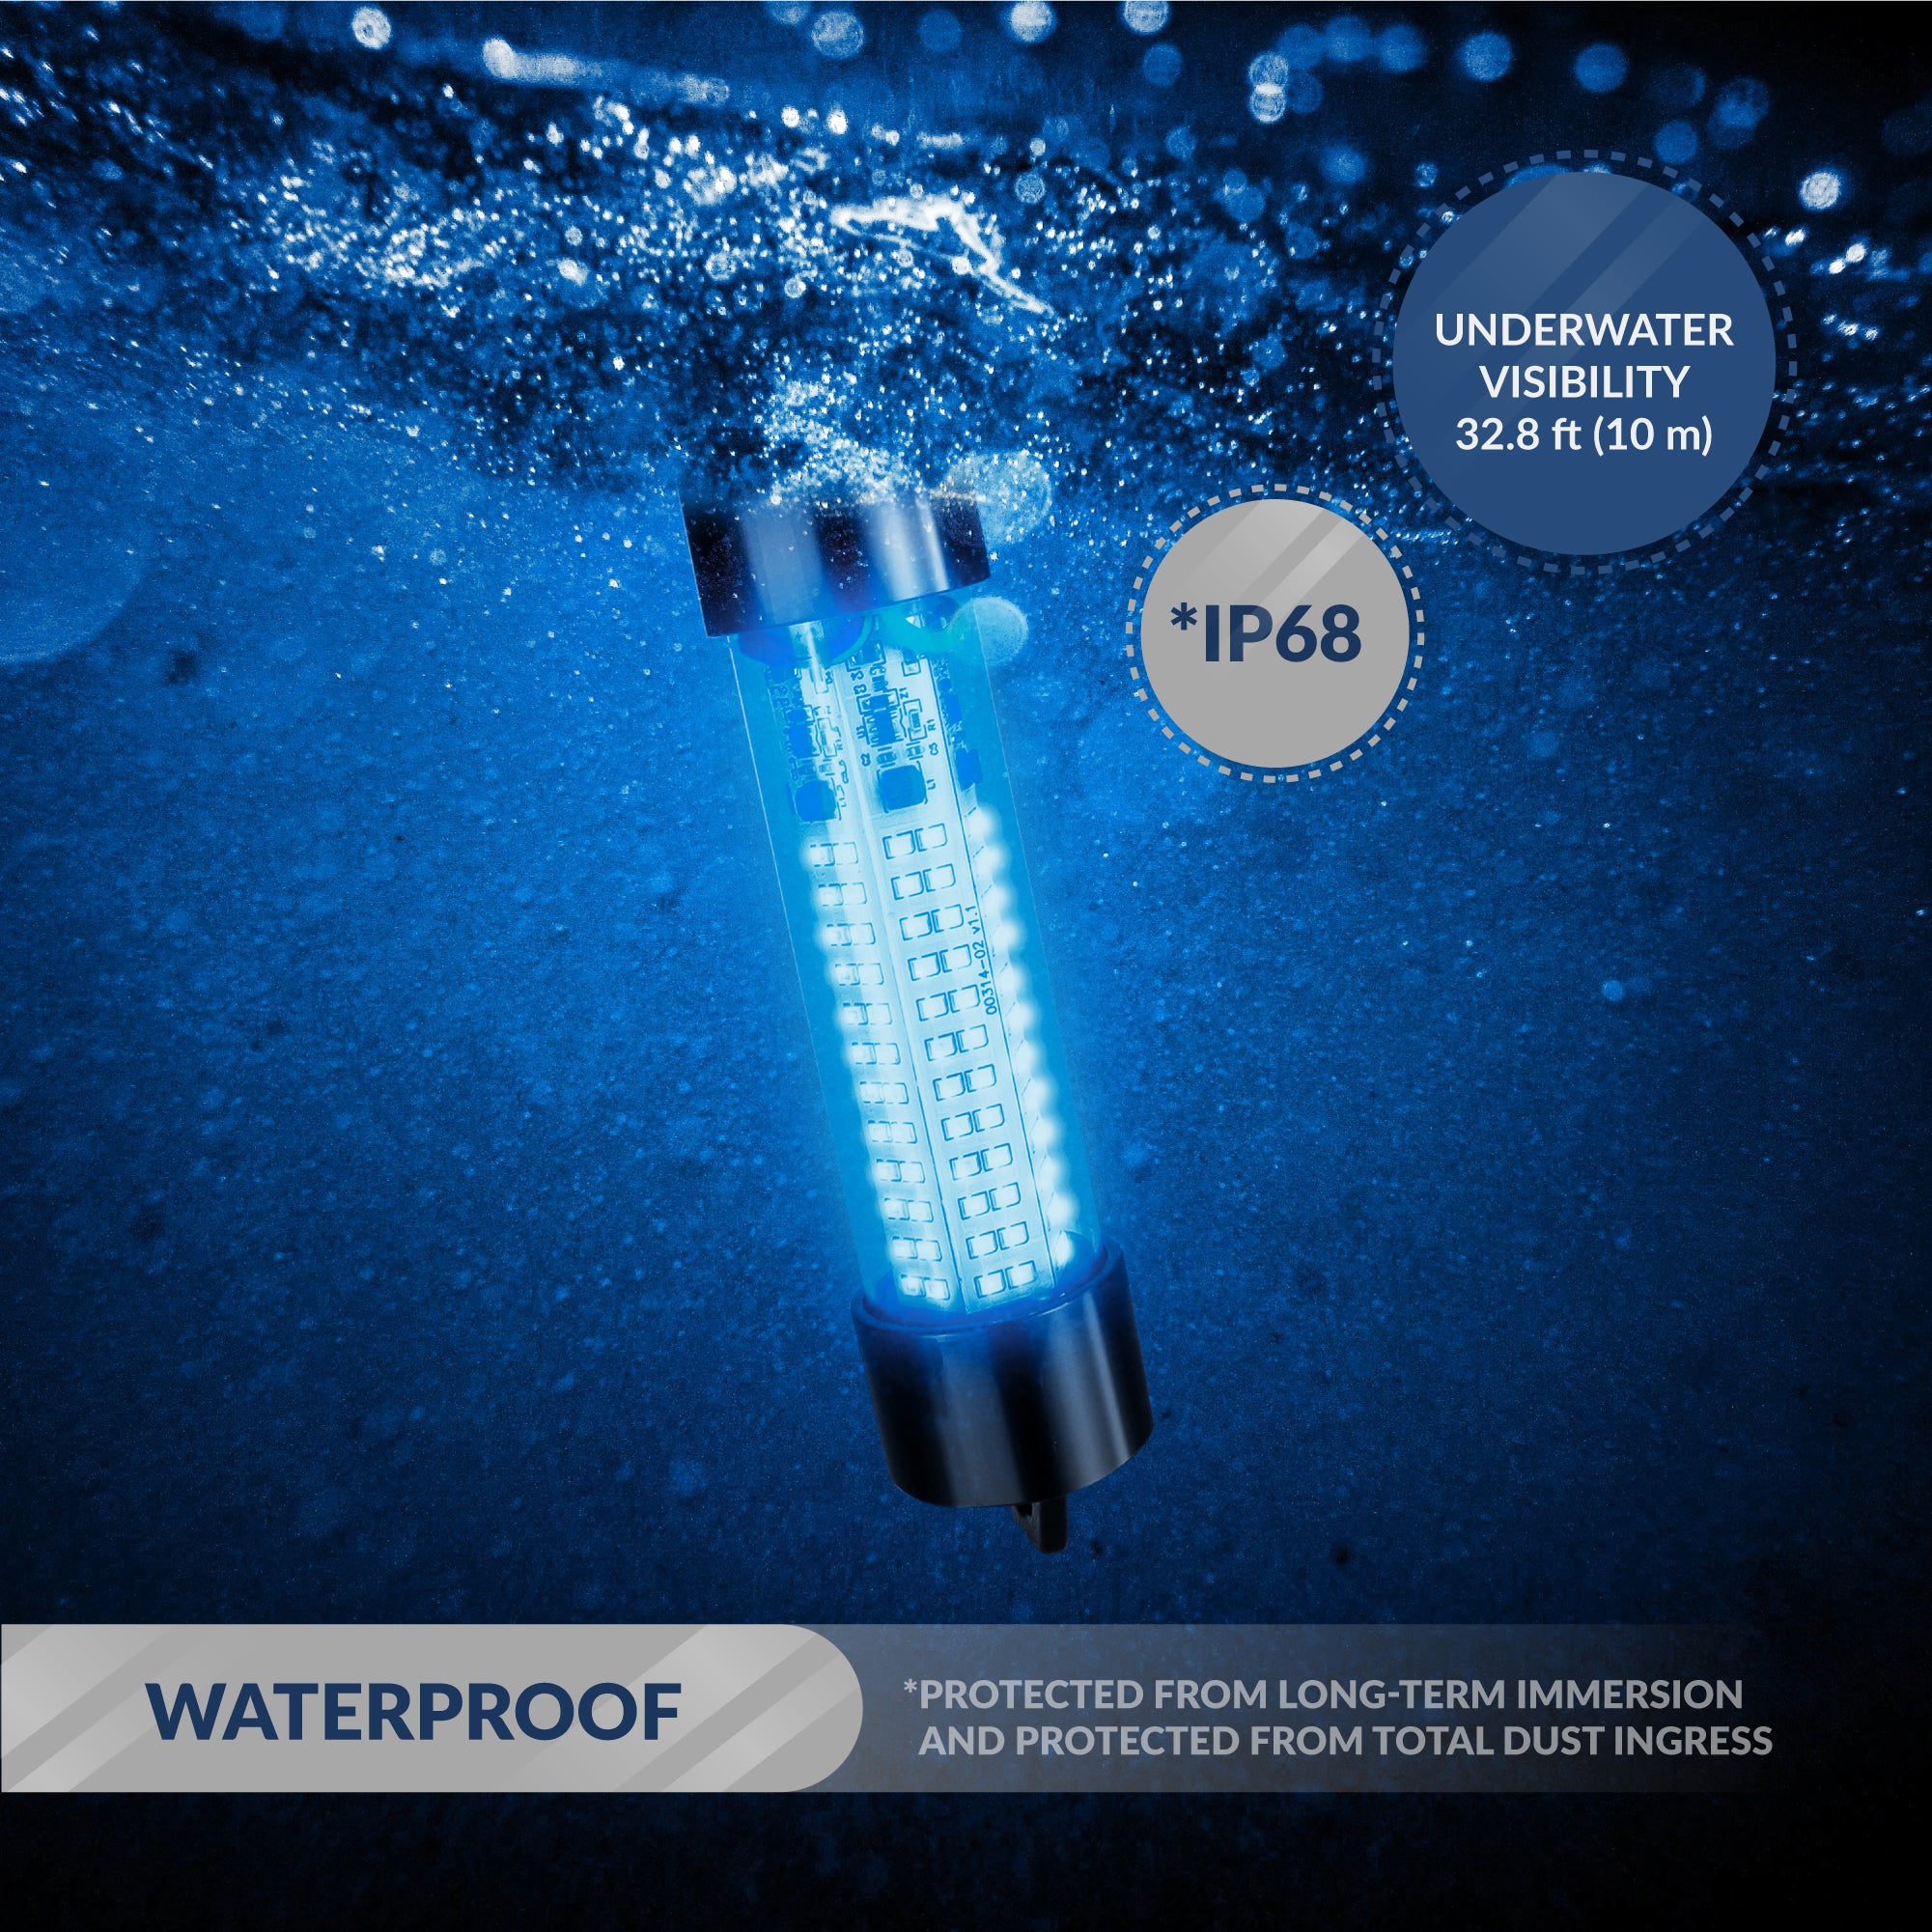 Underwater Fishing Light, Blue LED, 17' Power Cord, 10-30V - FO4388